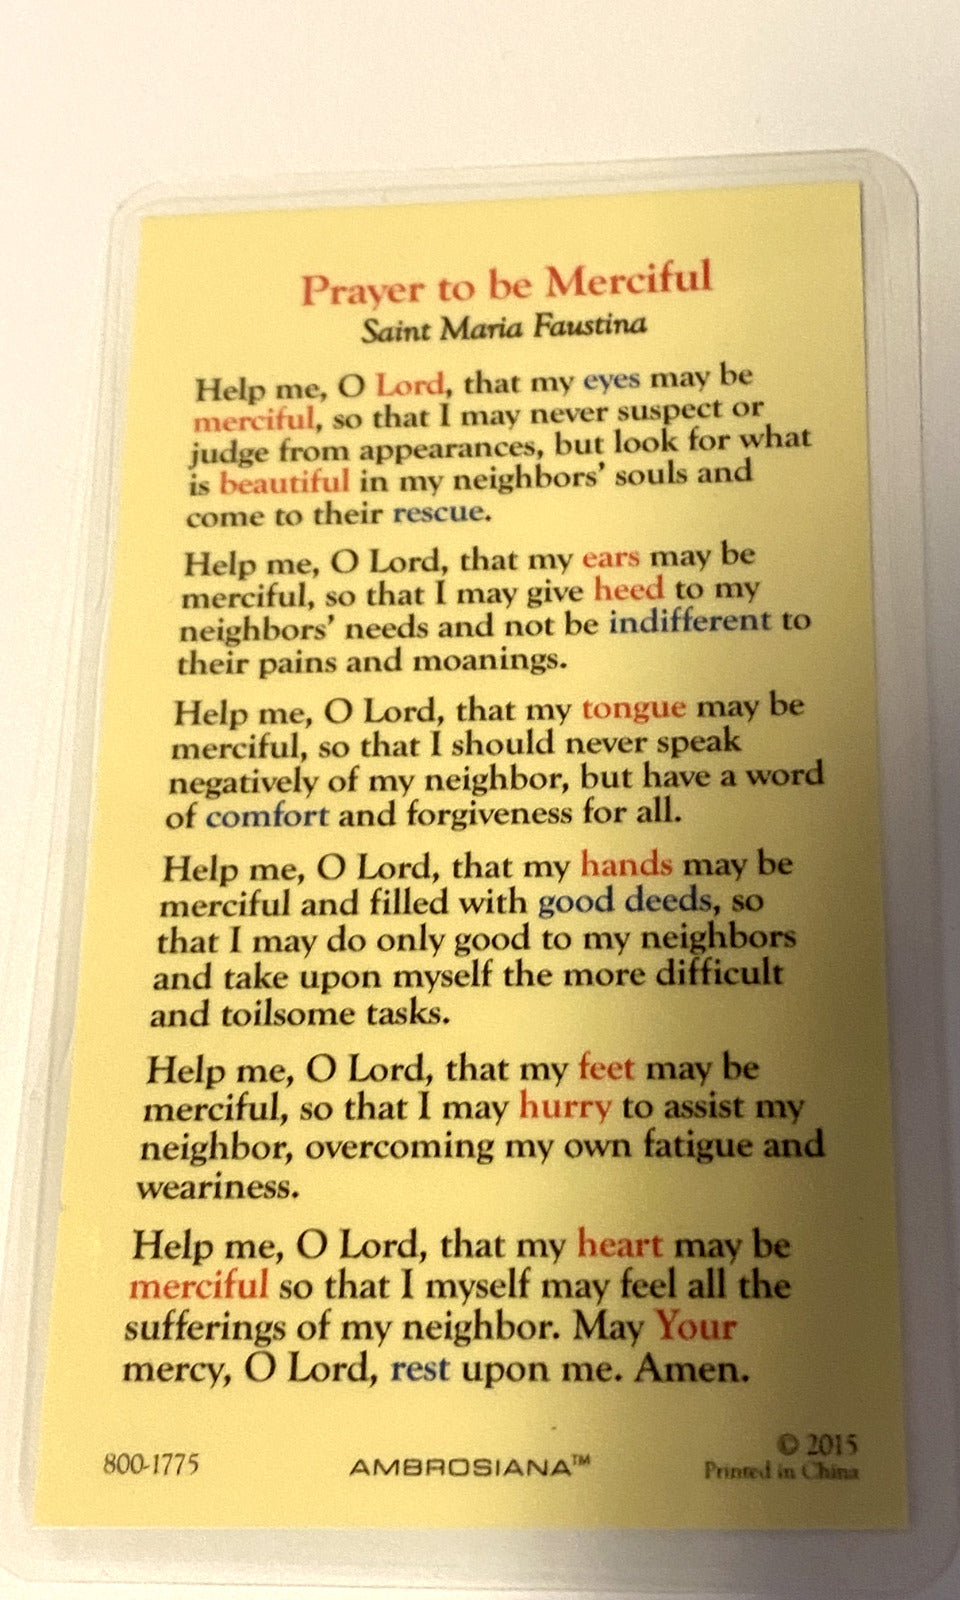 Saint Sister Faustina Laminated Prayer Card, New - Bob and Penny Lord